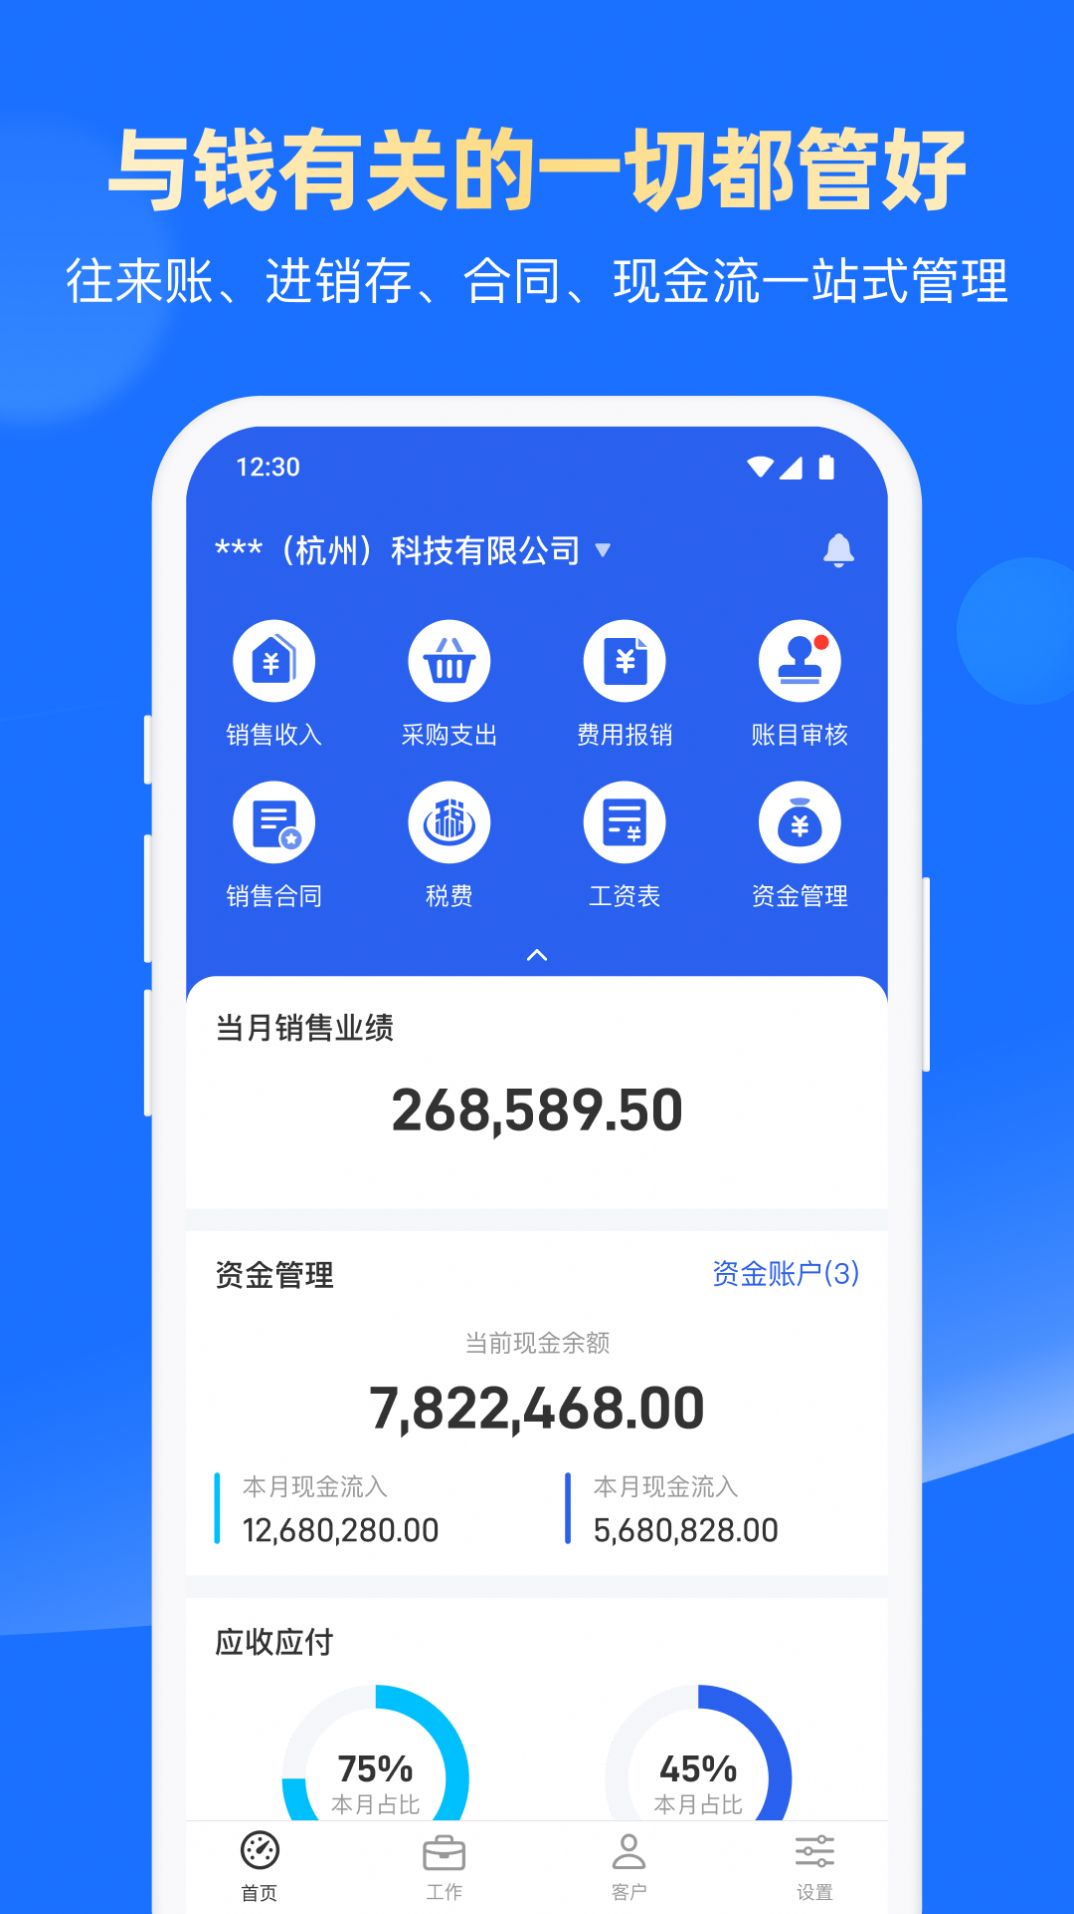 账王财税服务app